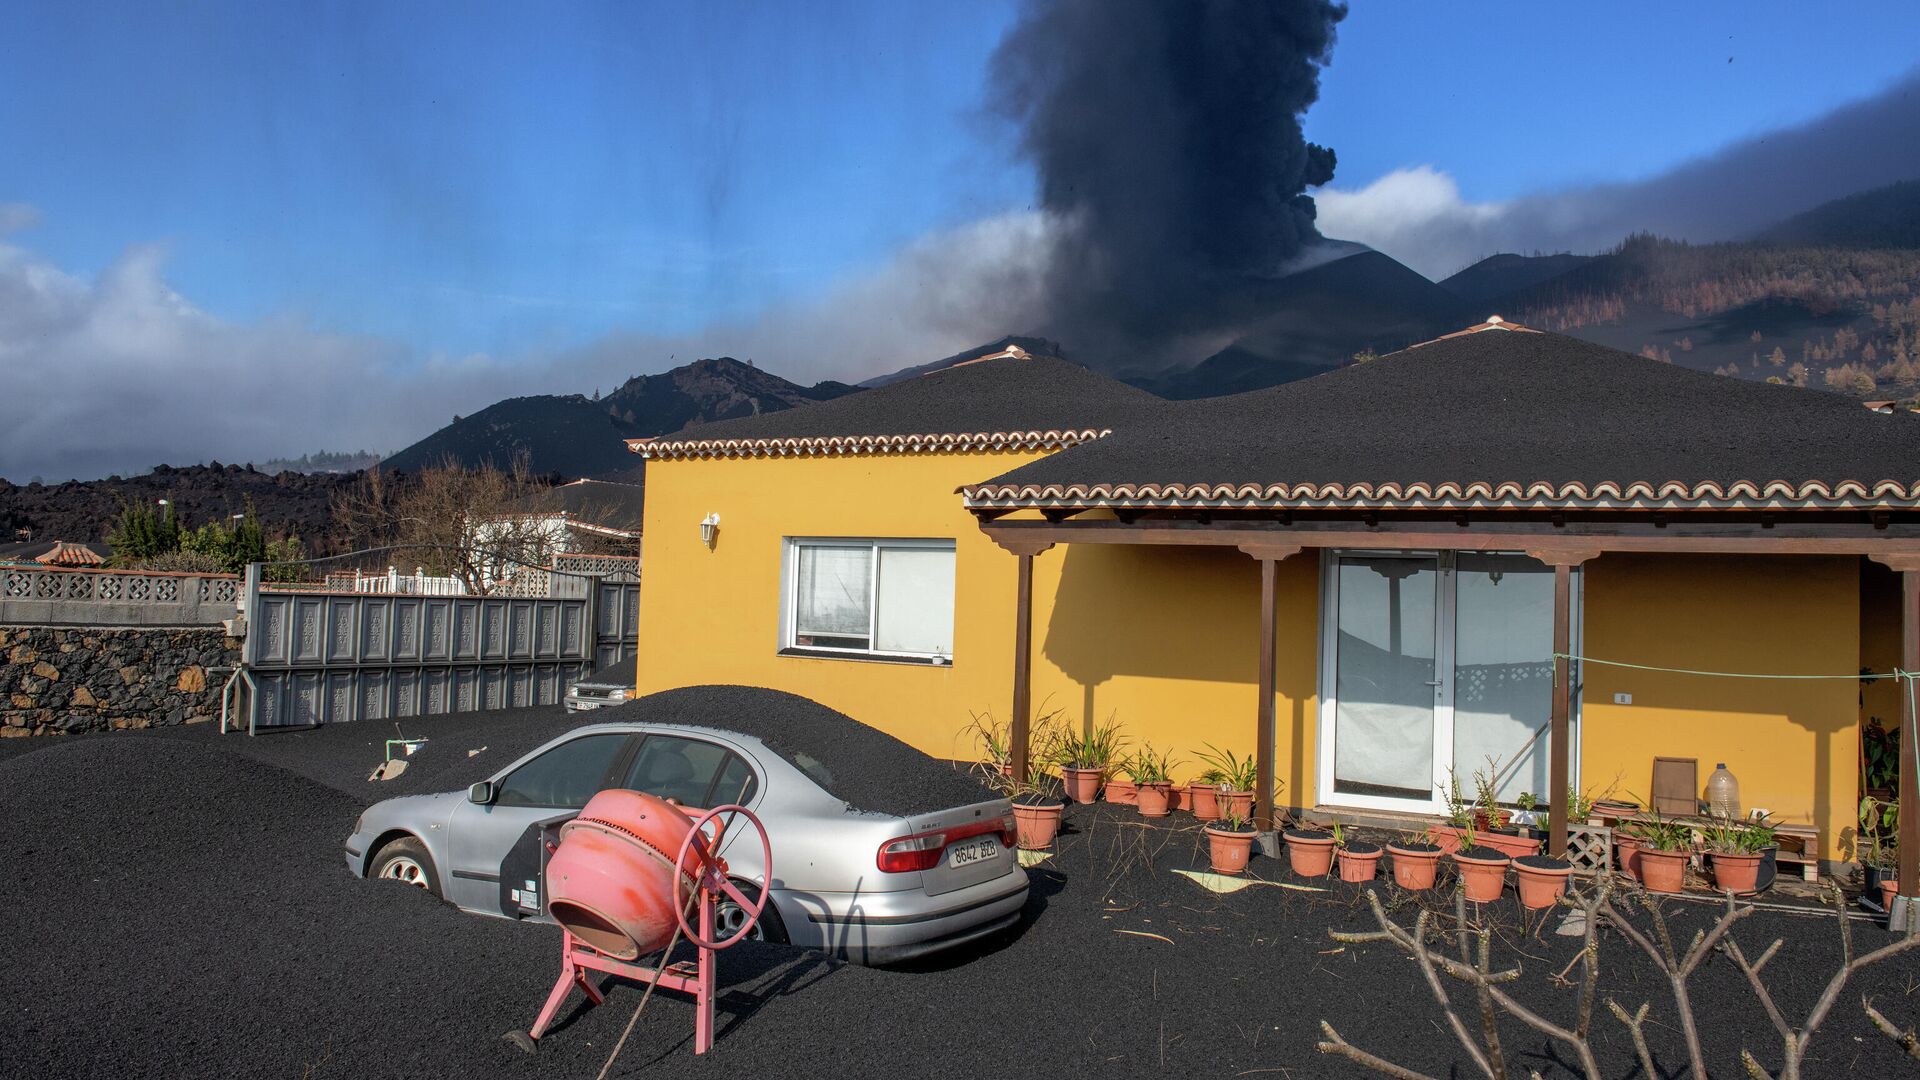 Дом, покрытый пеплом от извержения вулкана на Канарских островах  - РИА Новости, 1920, 10.10.2021